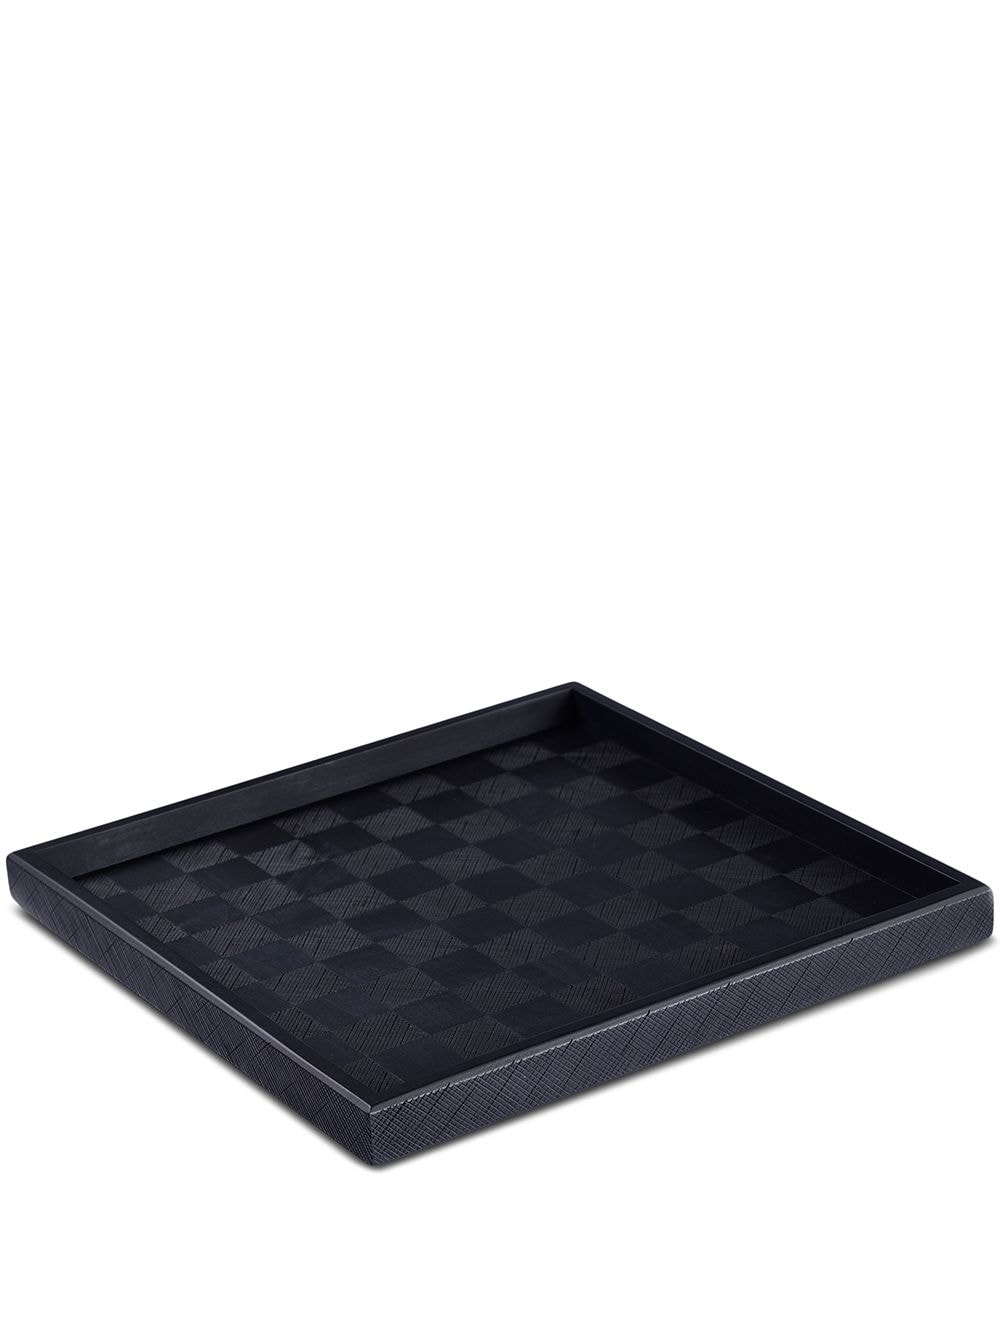 Zanat Kioko serving tray/chess board (35cm) - Black von Zanat